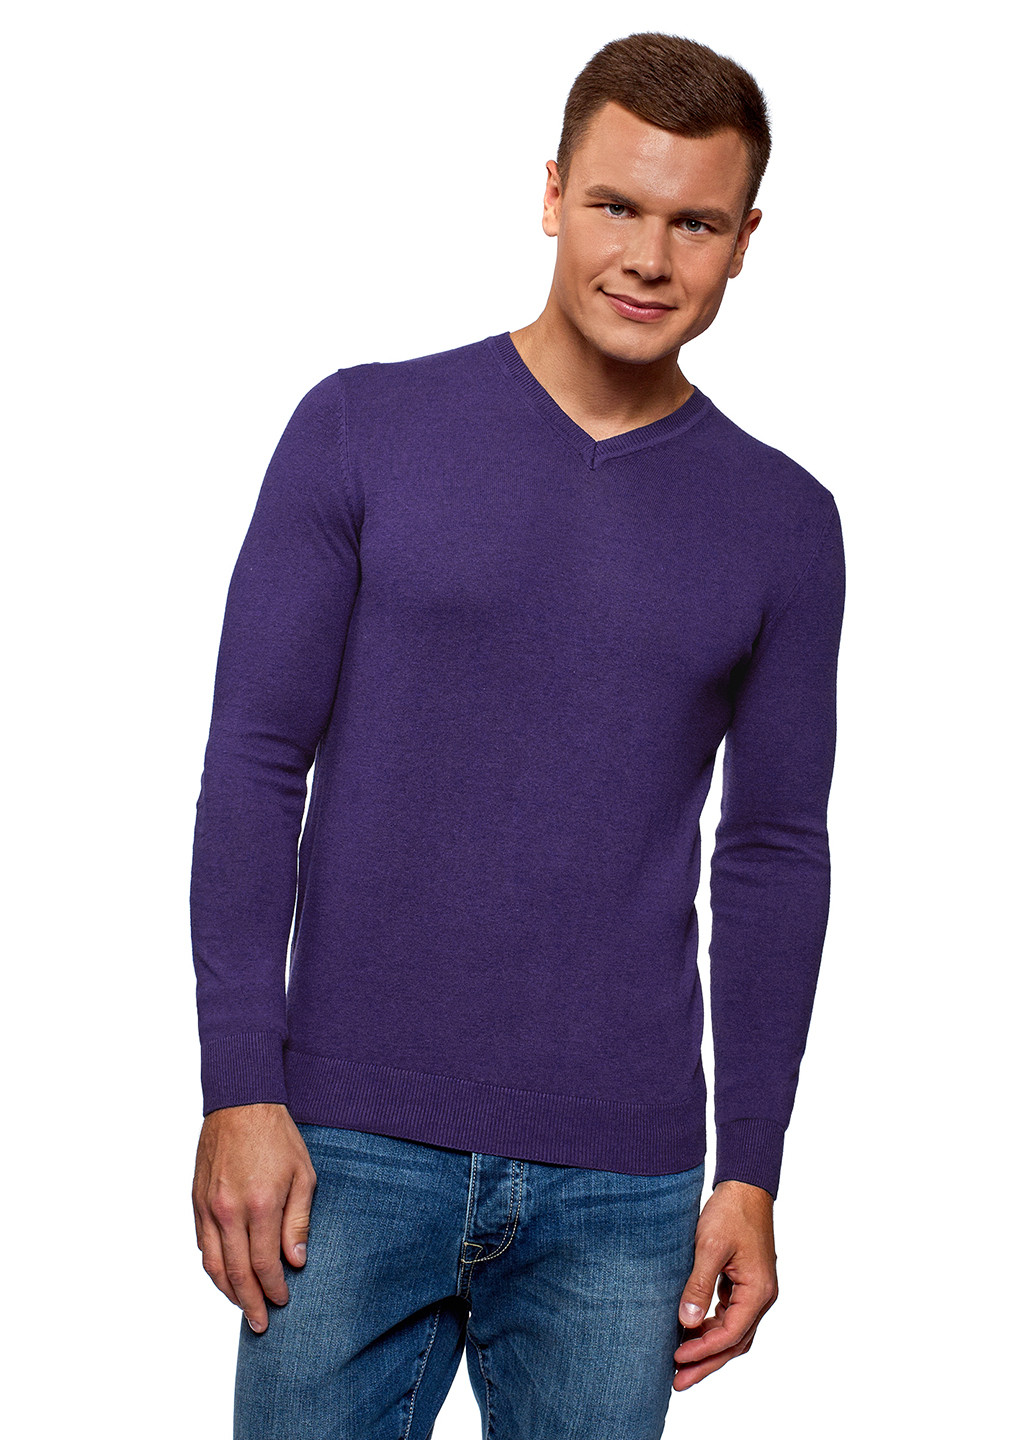 Фиолетовый демисезонный пуловер пуловер Oodji